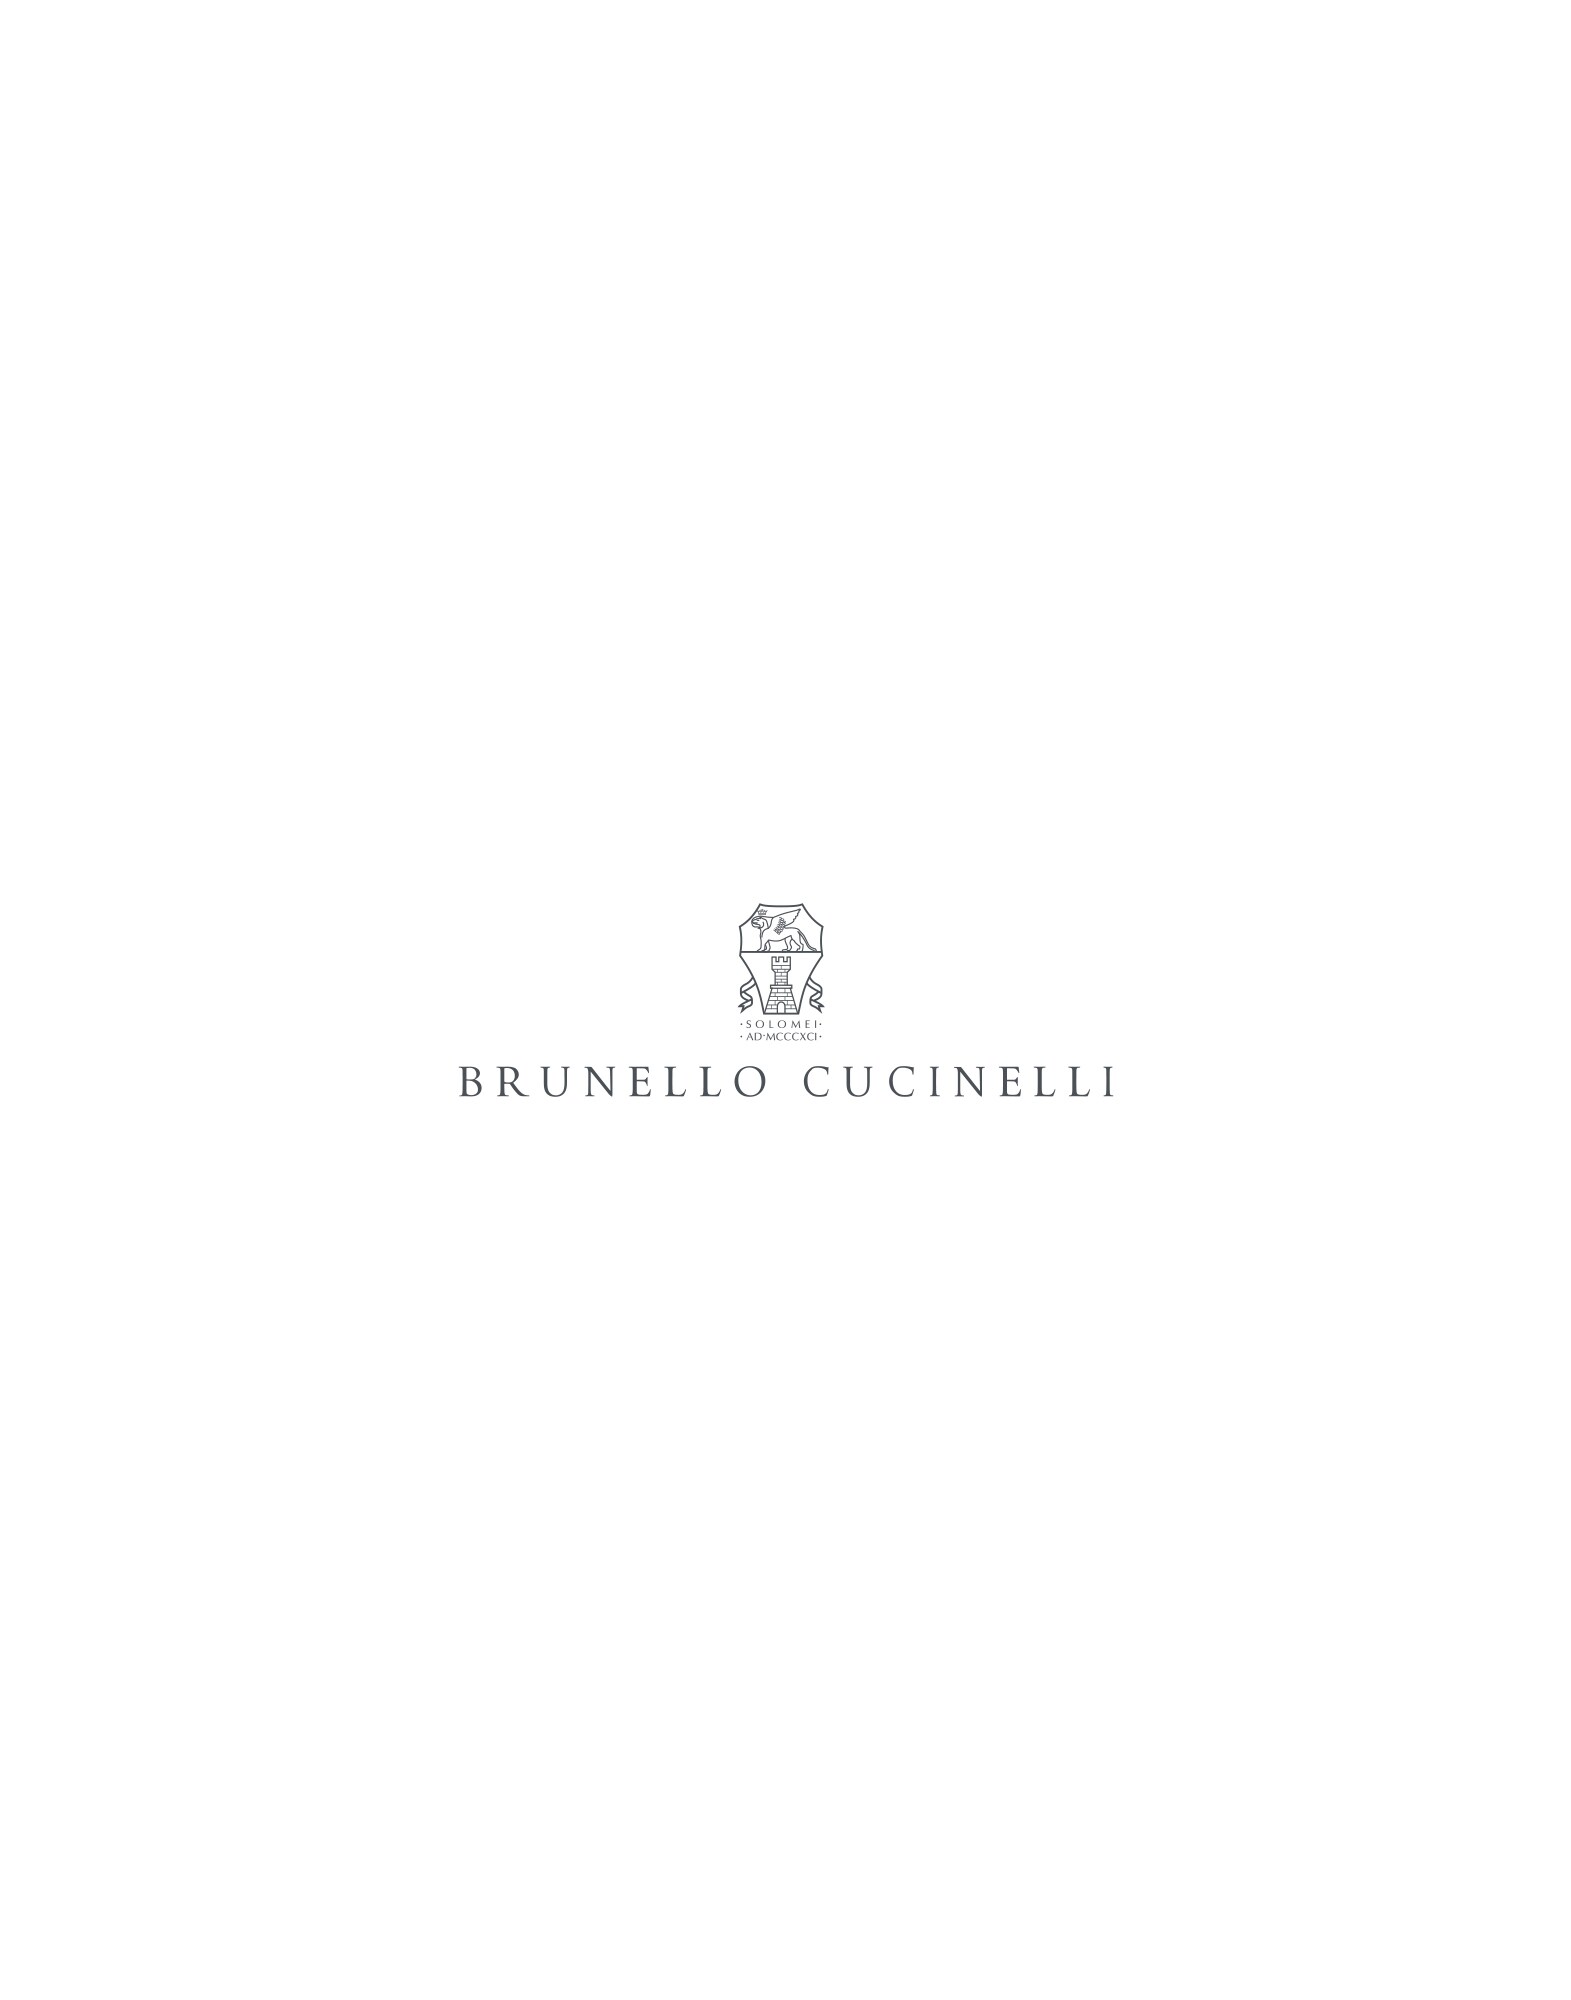 Stricksocken Braunkohle Damen - Brunello Cucinelli 